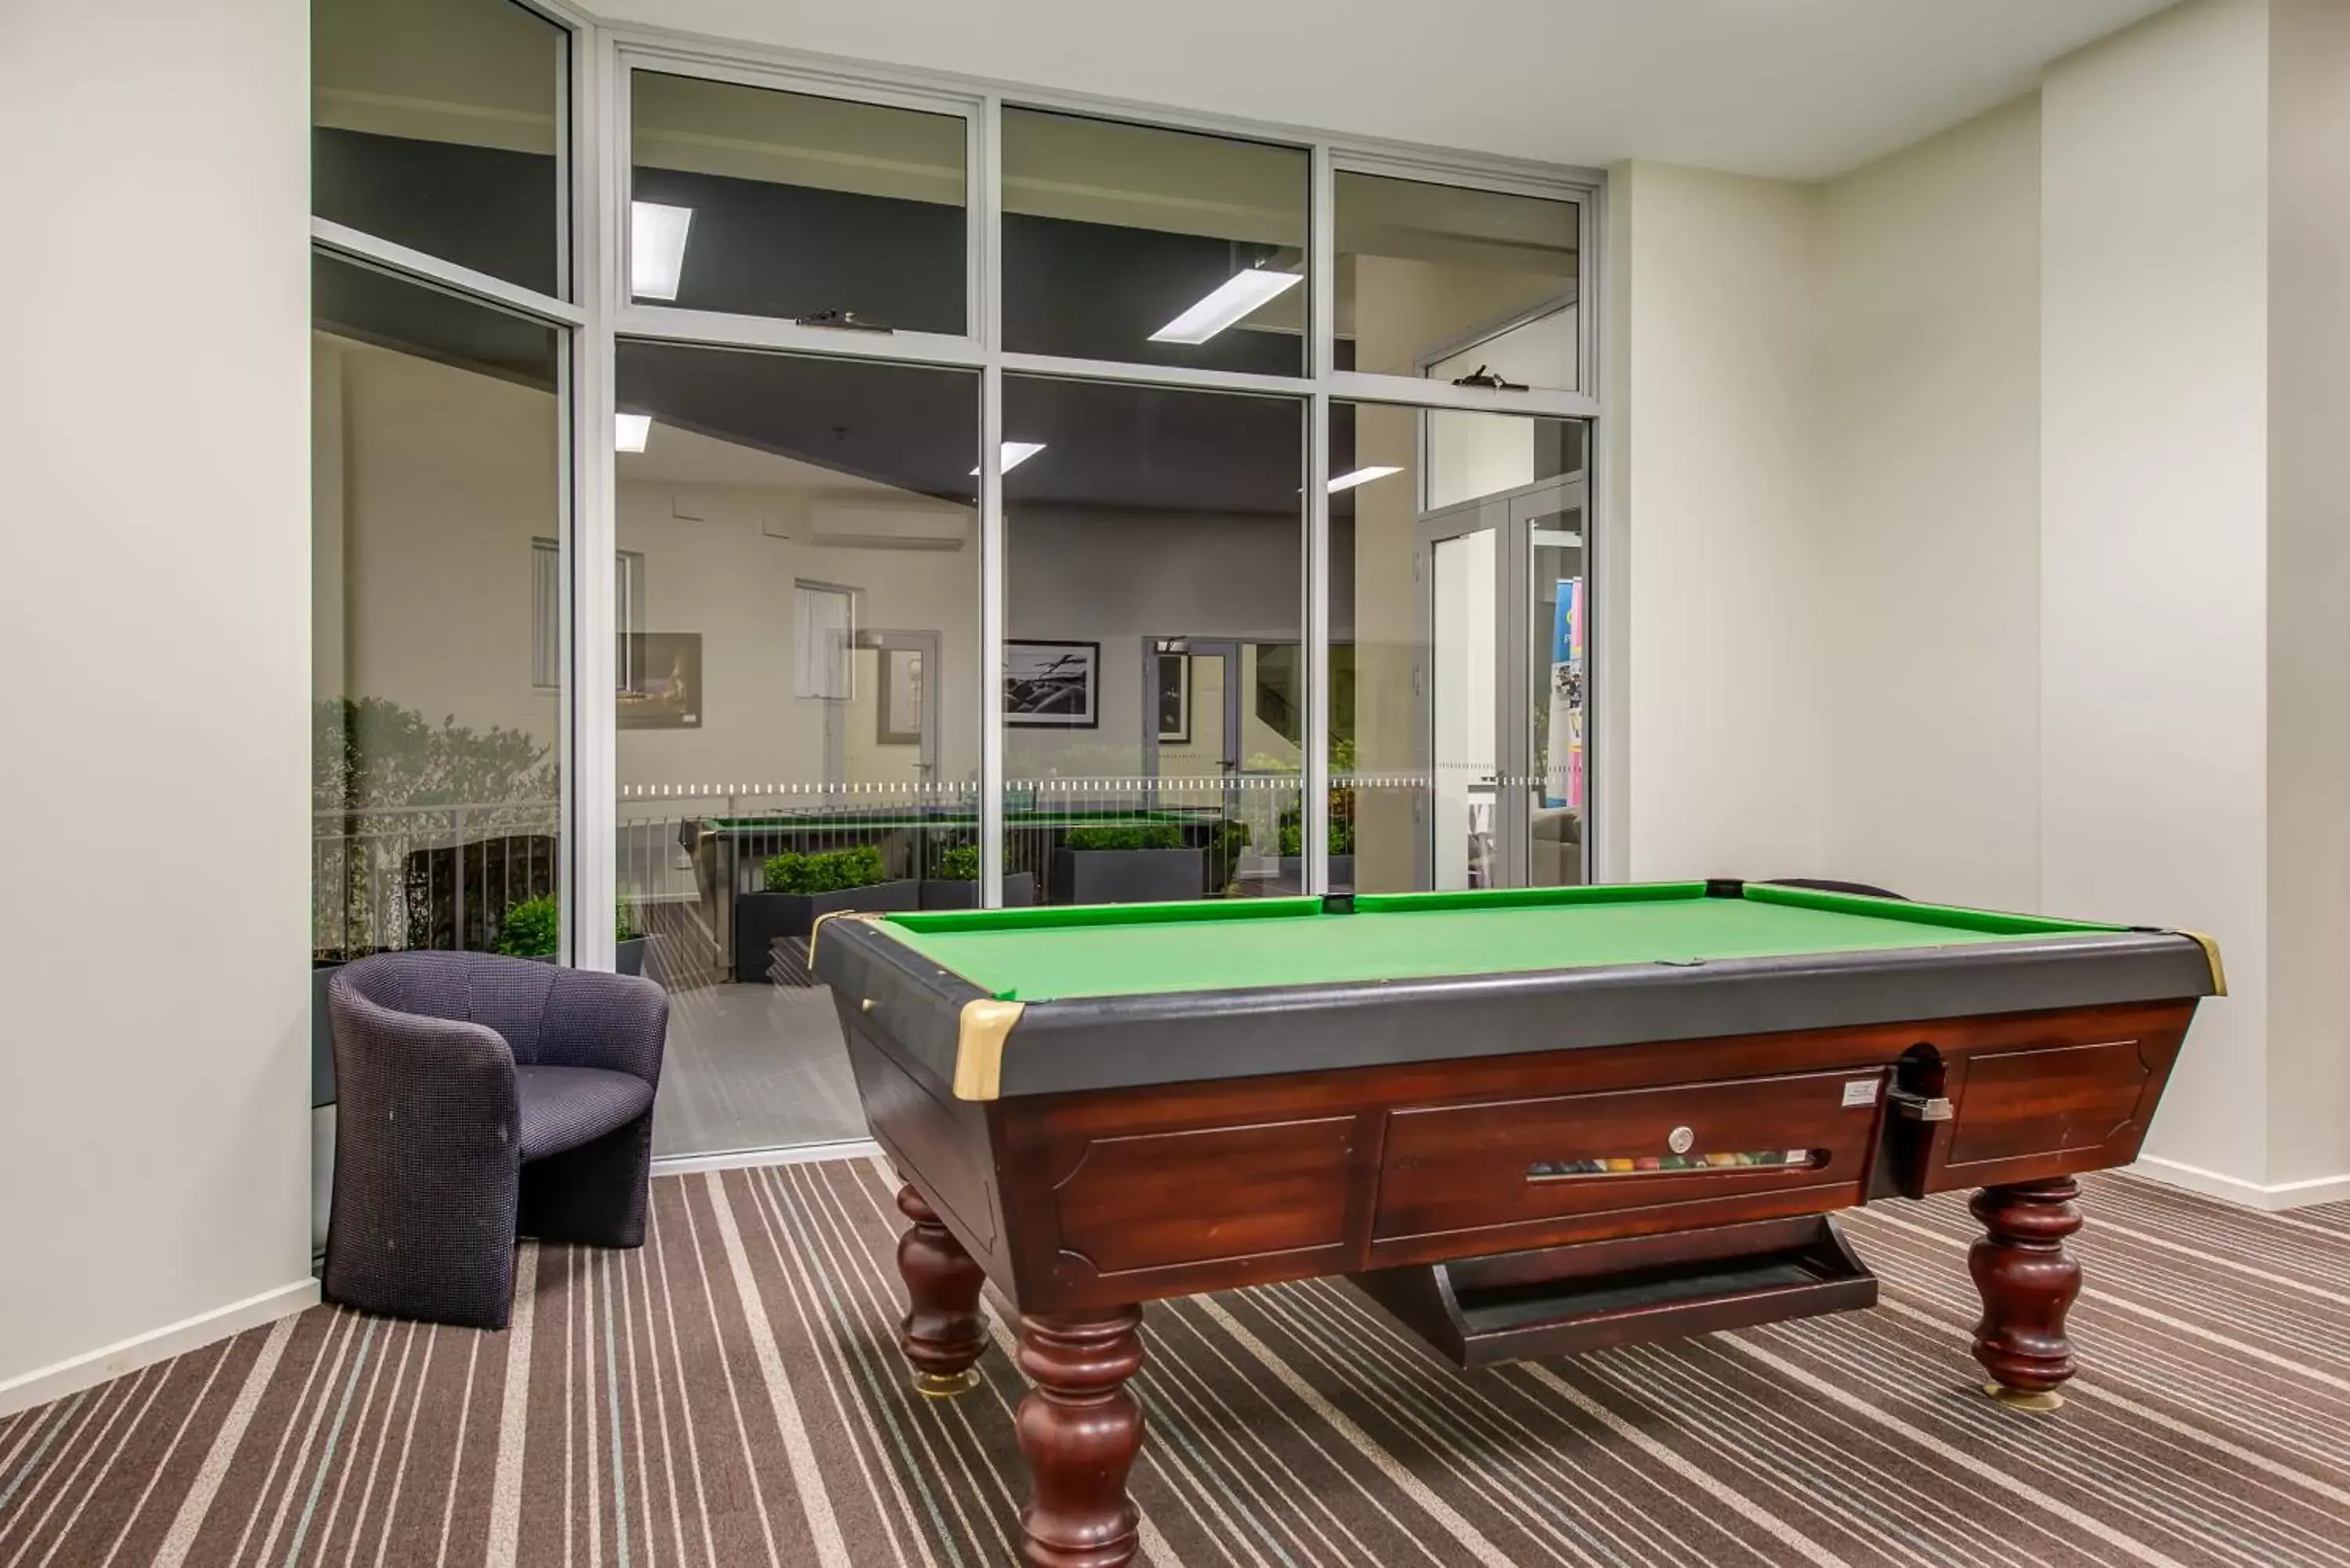 Game Room, Billiards in Bay View Villas